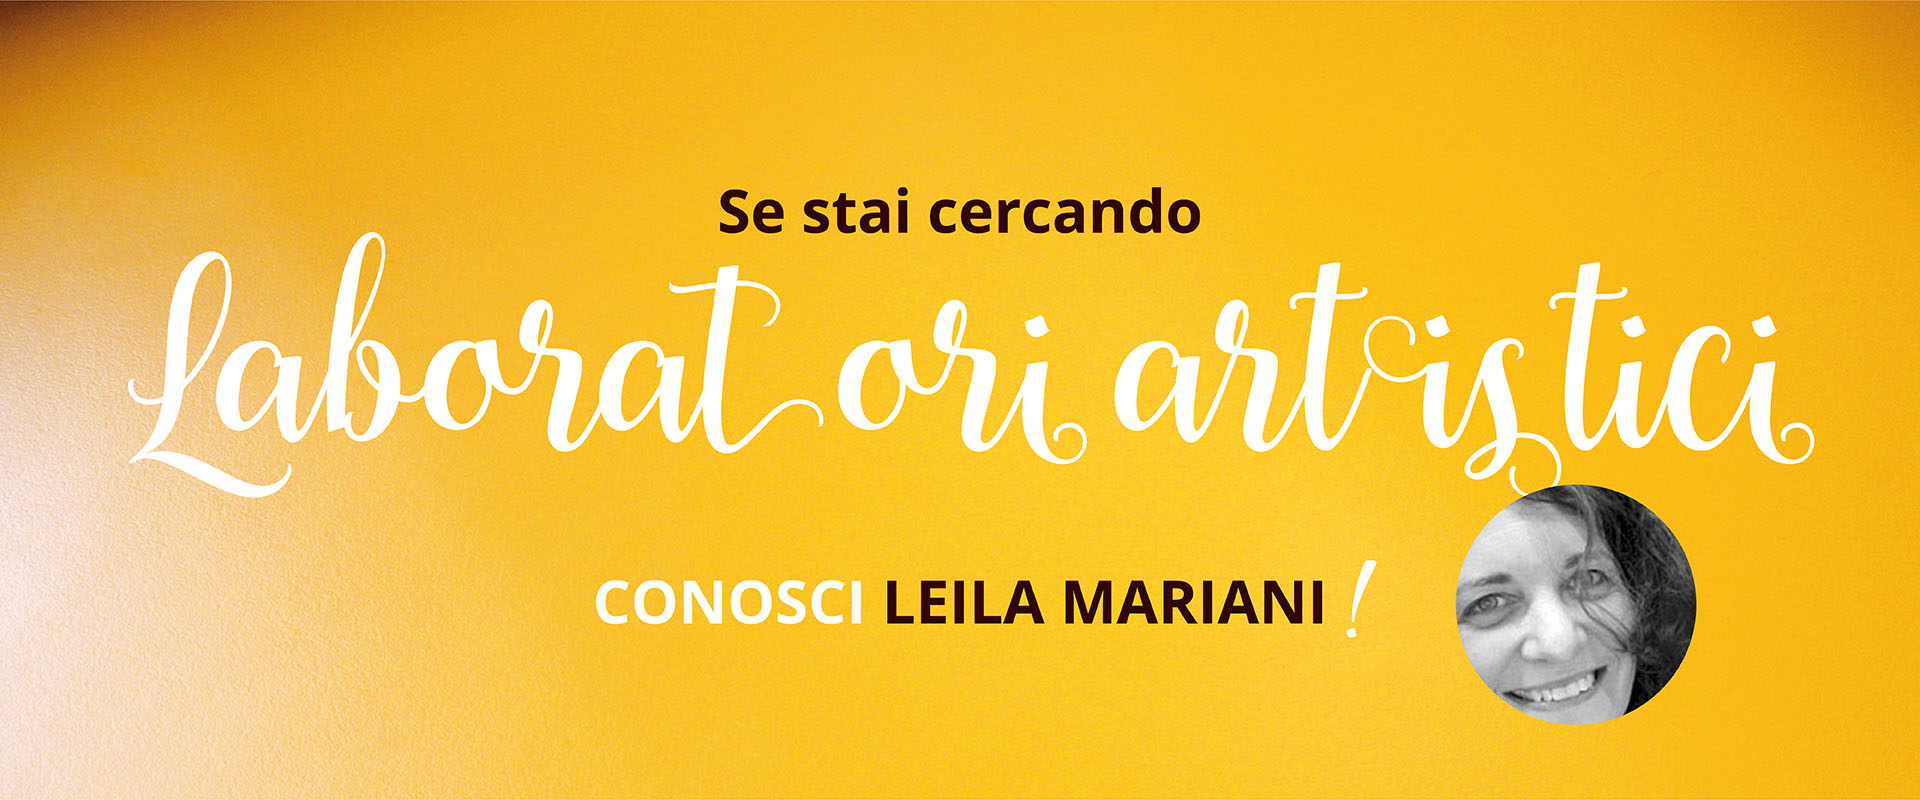 Spazio per me, Leila Mariani, Laboratori artistici.